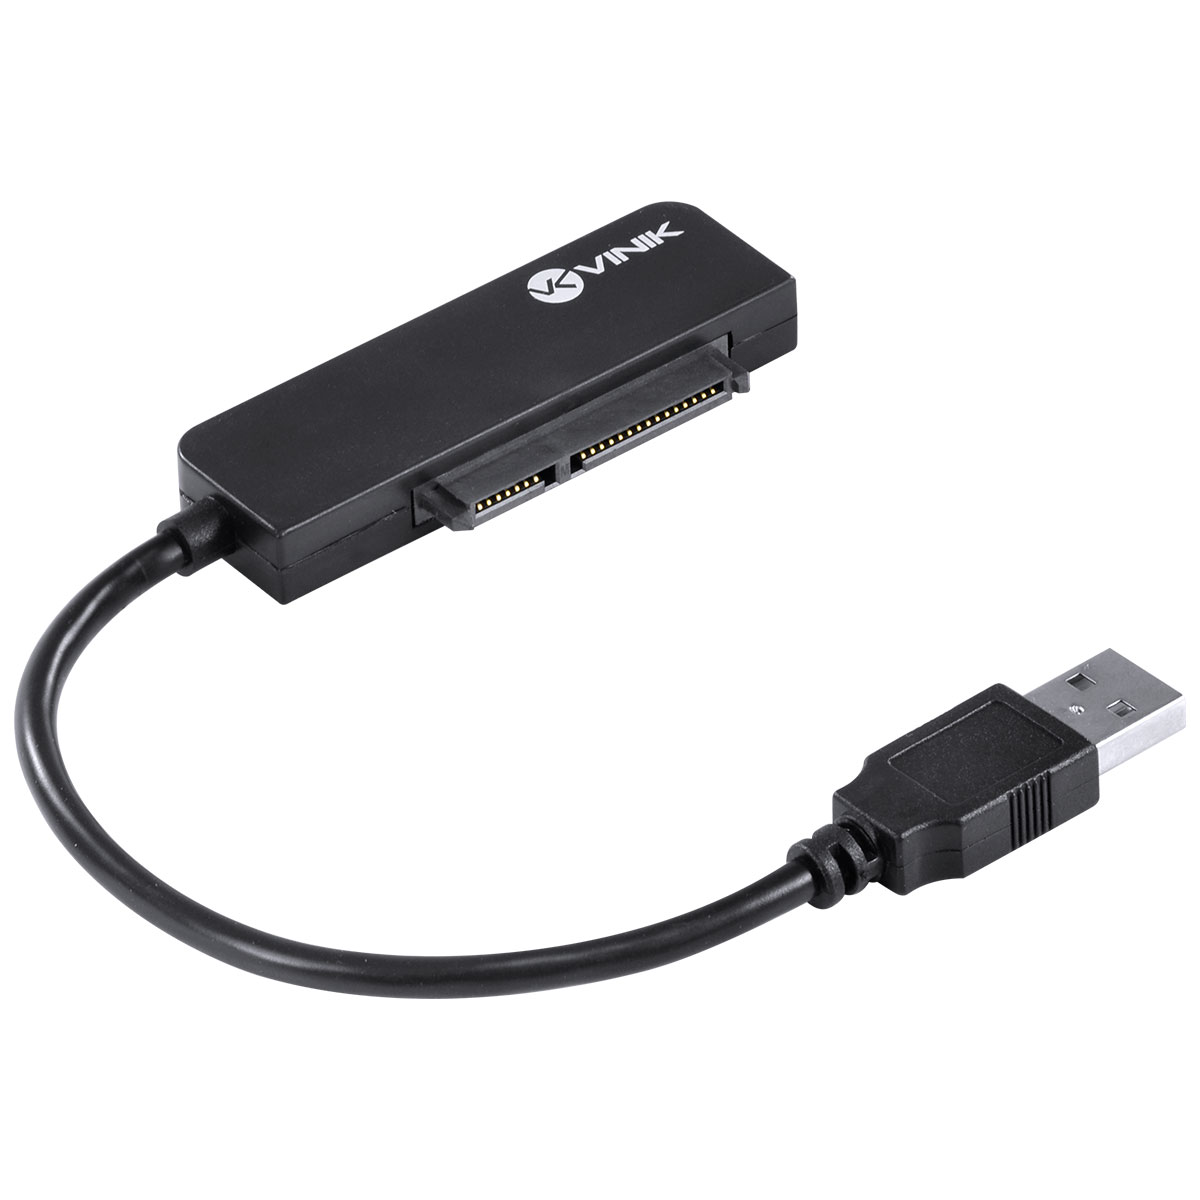 CABO ADAPTADOR SATA para USB - Cor: Preto